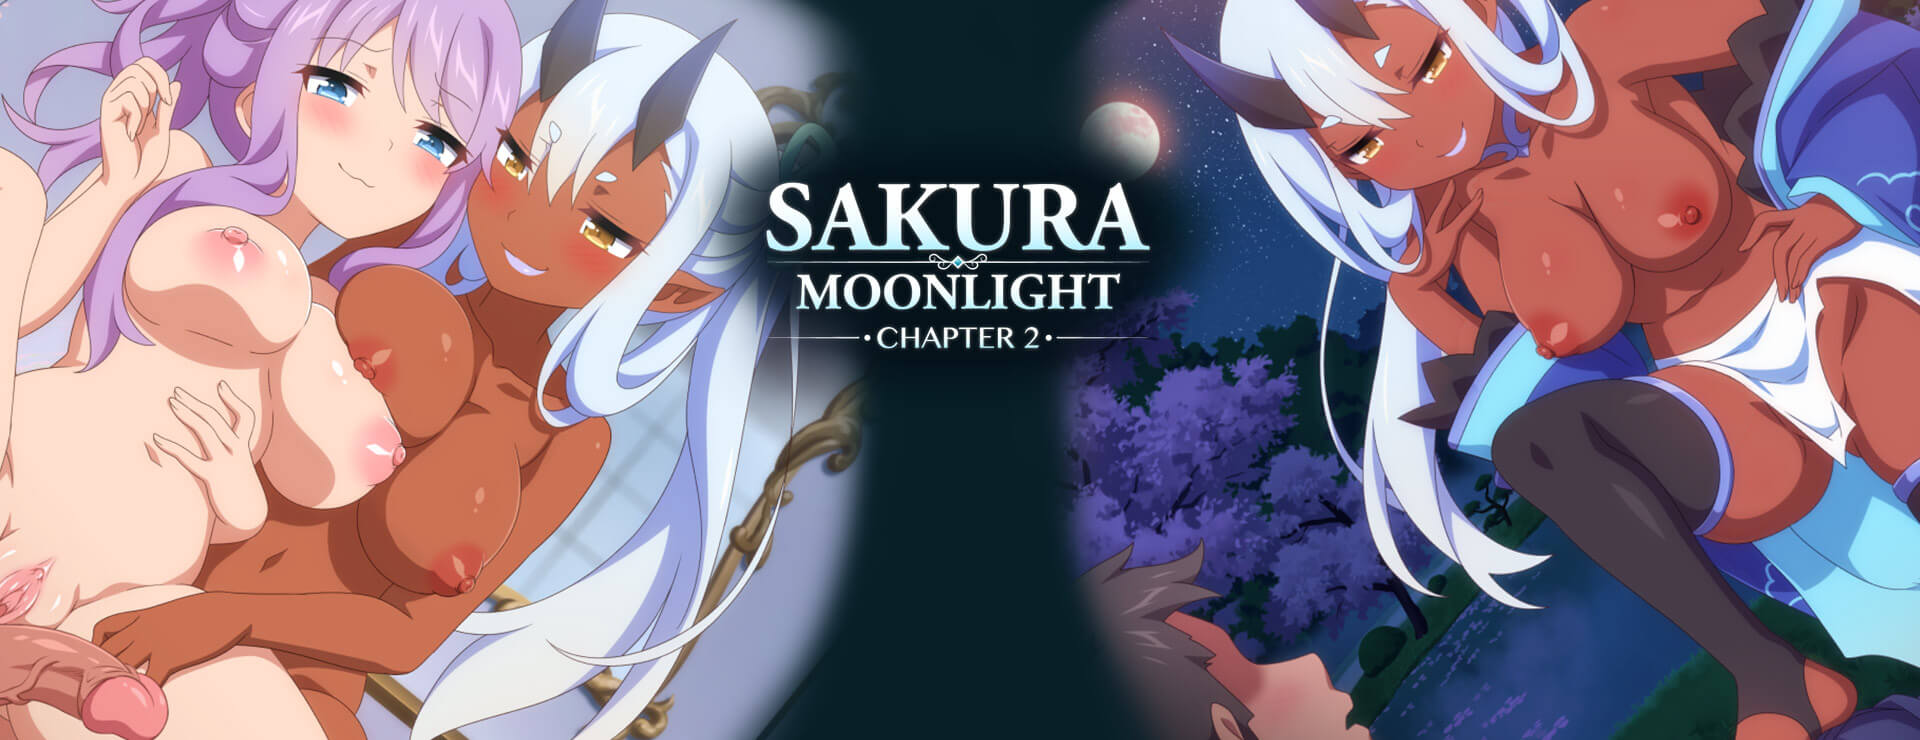 Sakura Moonlight - Part 2 thumbnail